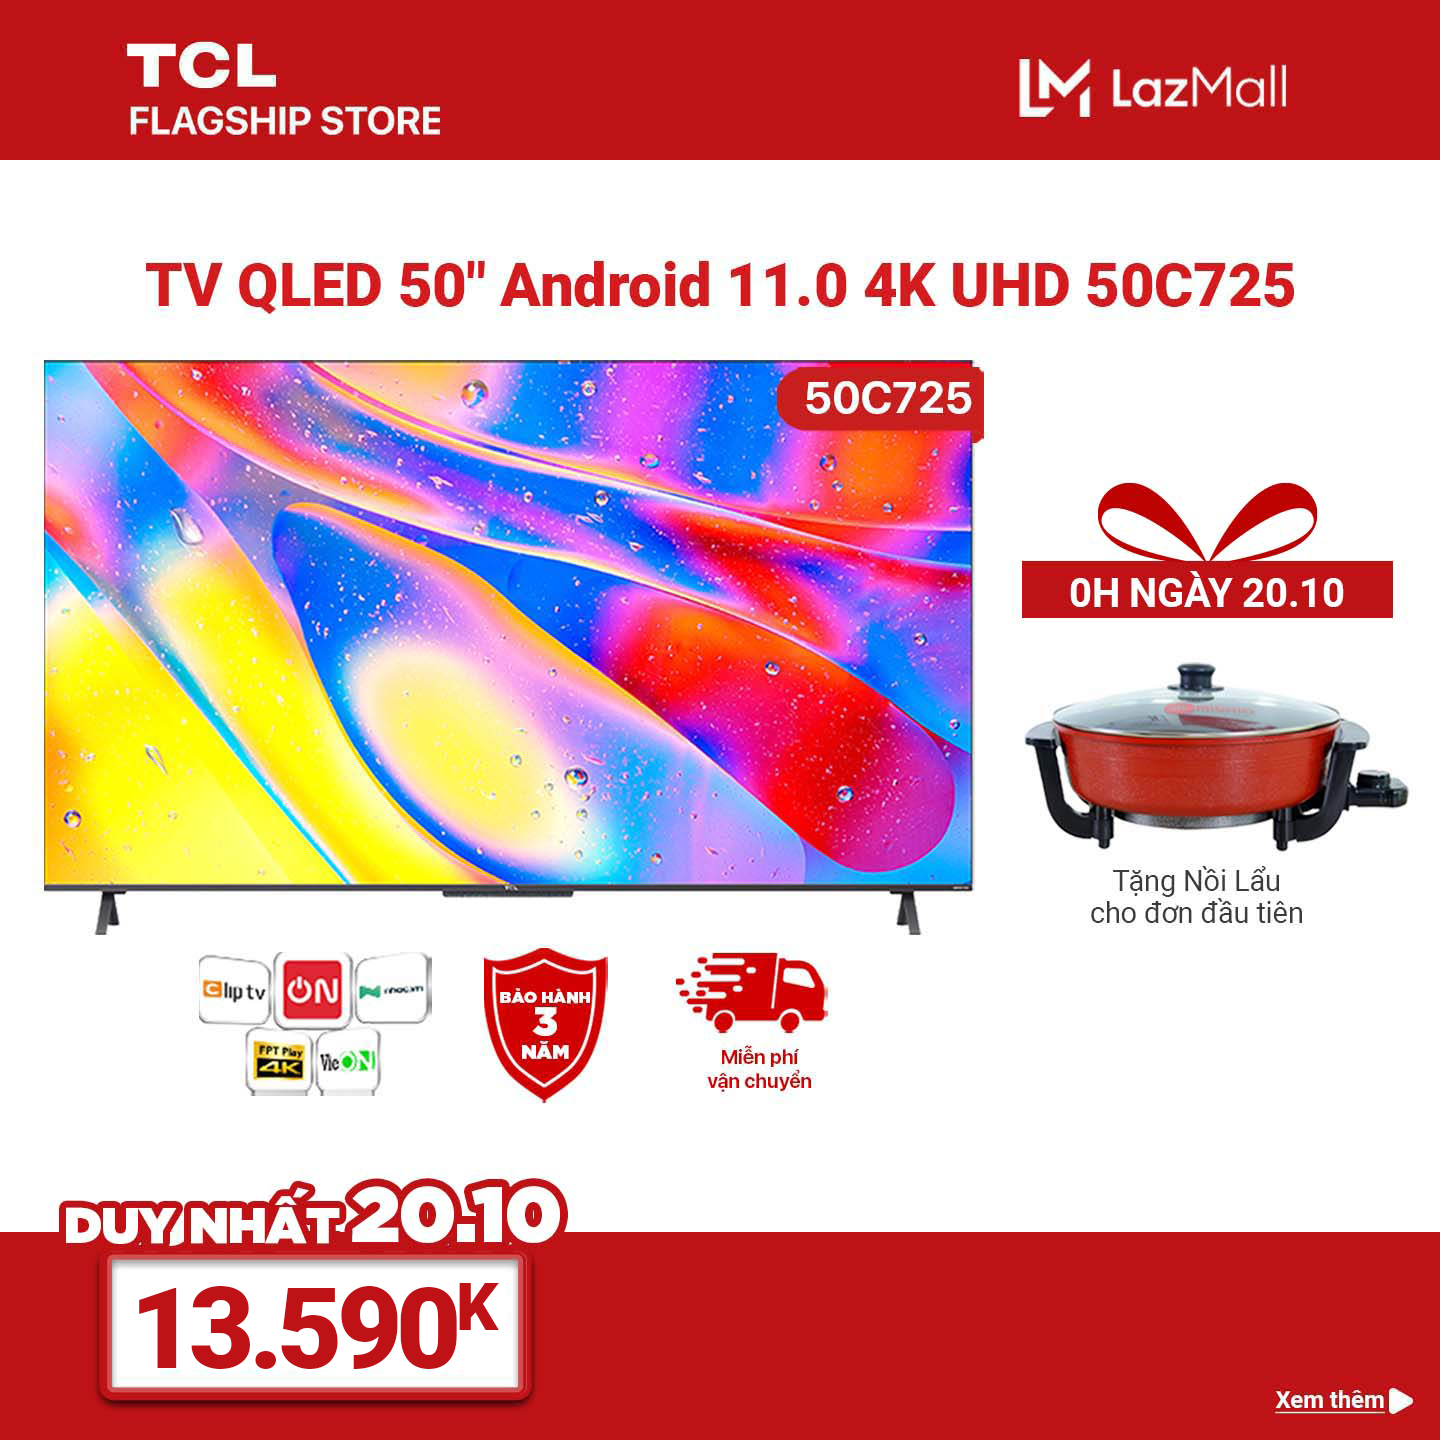 TV QLED 50” 4K Android 11 Tivi TCL 50C725 – Gam Màu Rộng , HDR 10+, MEMC , Dolby Audio – Bảo Hành 3 Năm , trả góp 0%